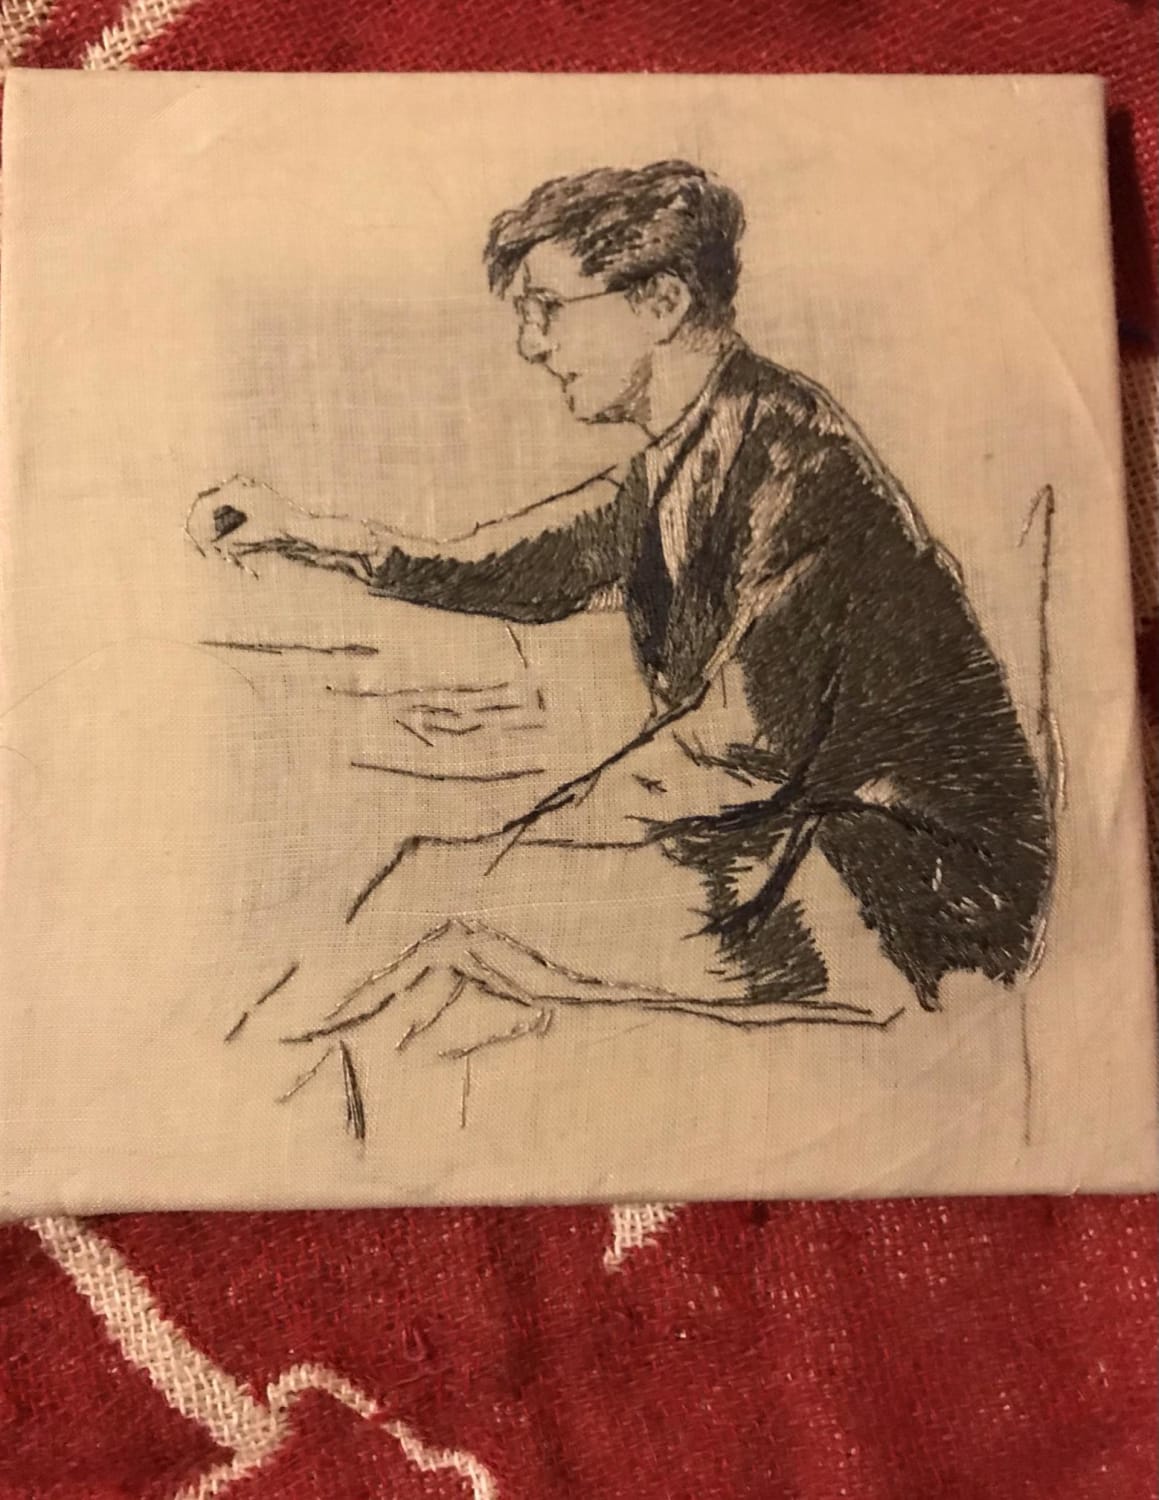 Shostakovich embroidery #2, Based on a sketch by Nikolai Sokolov. 1942. Spendor silk thread on ramie blend fabric.